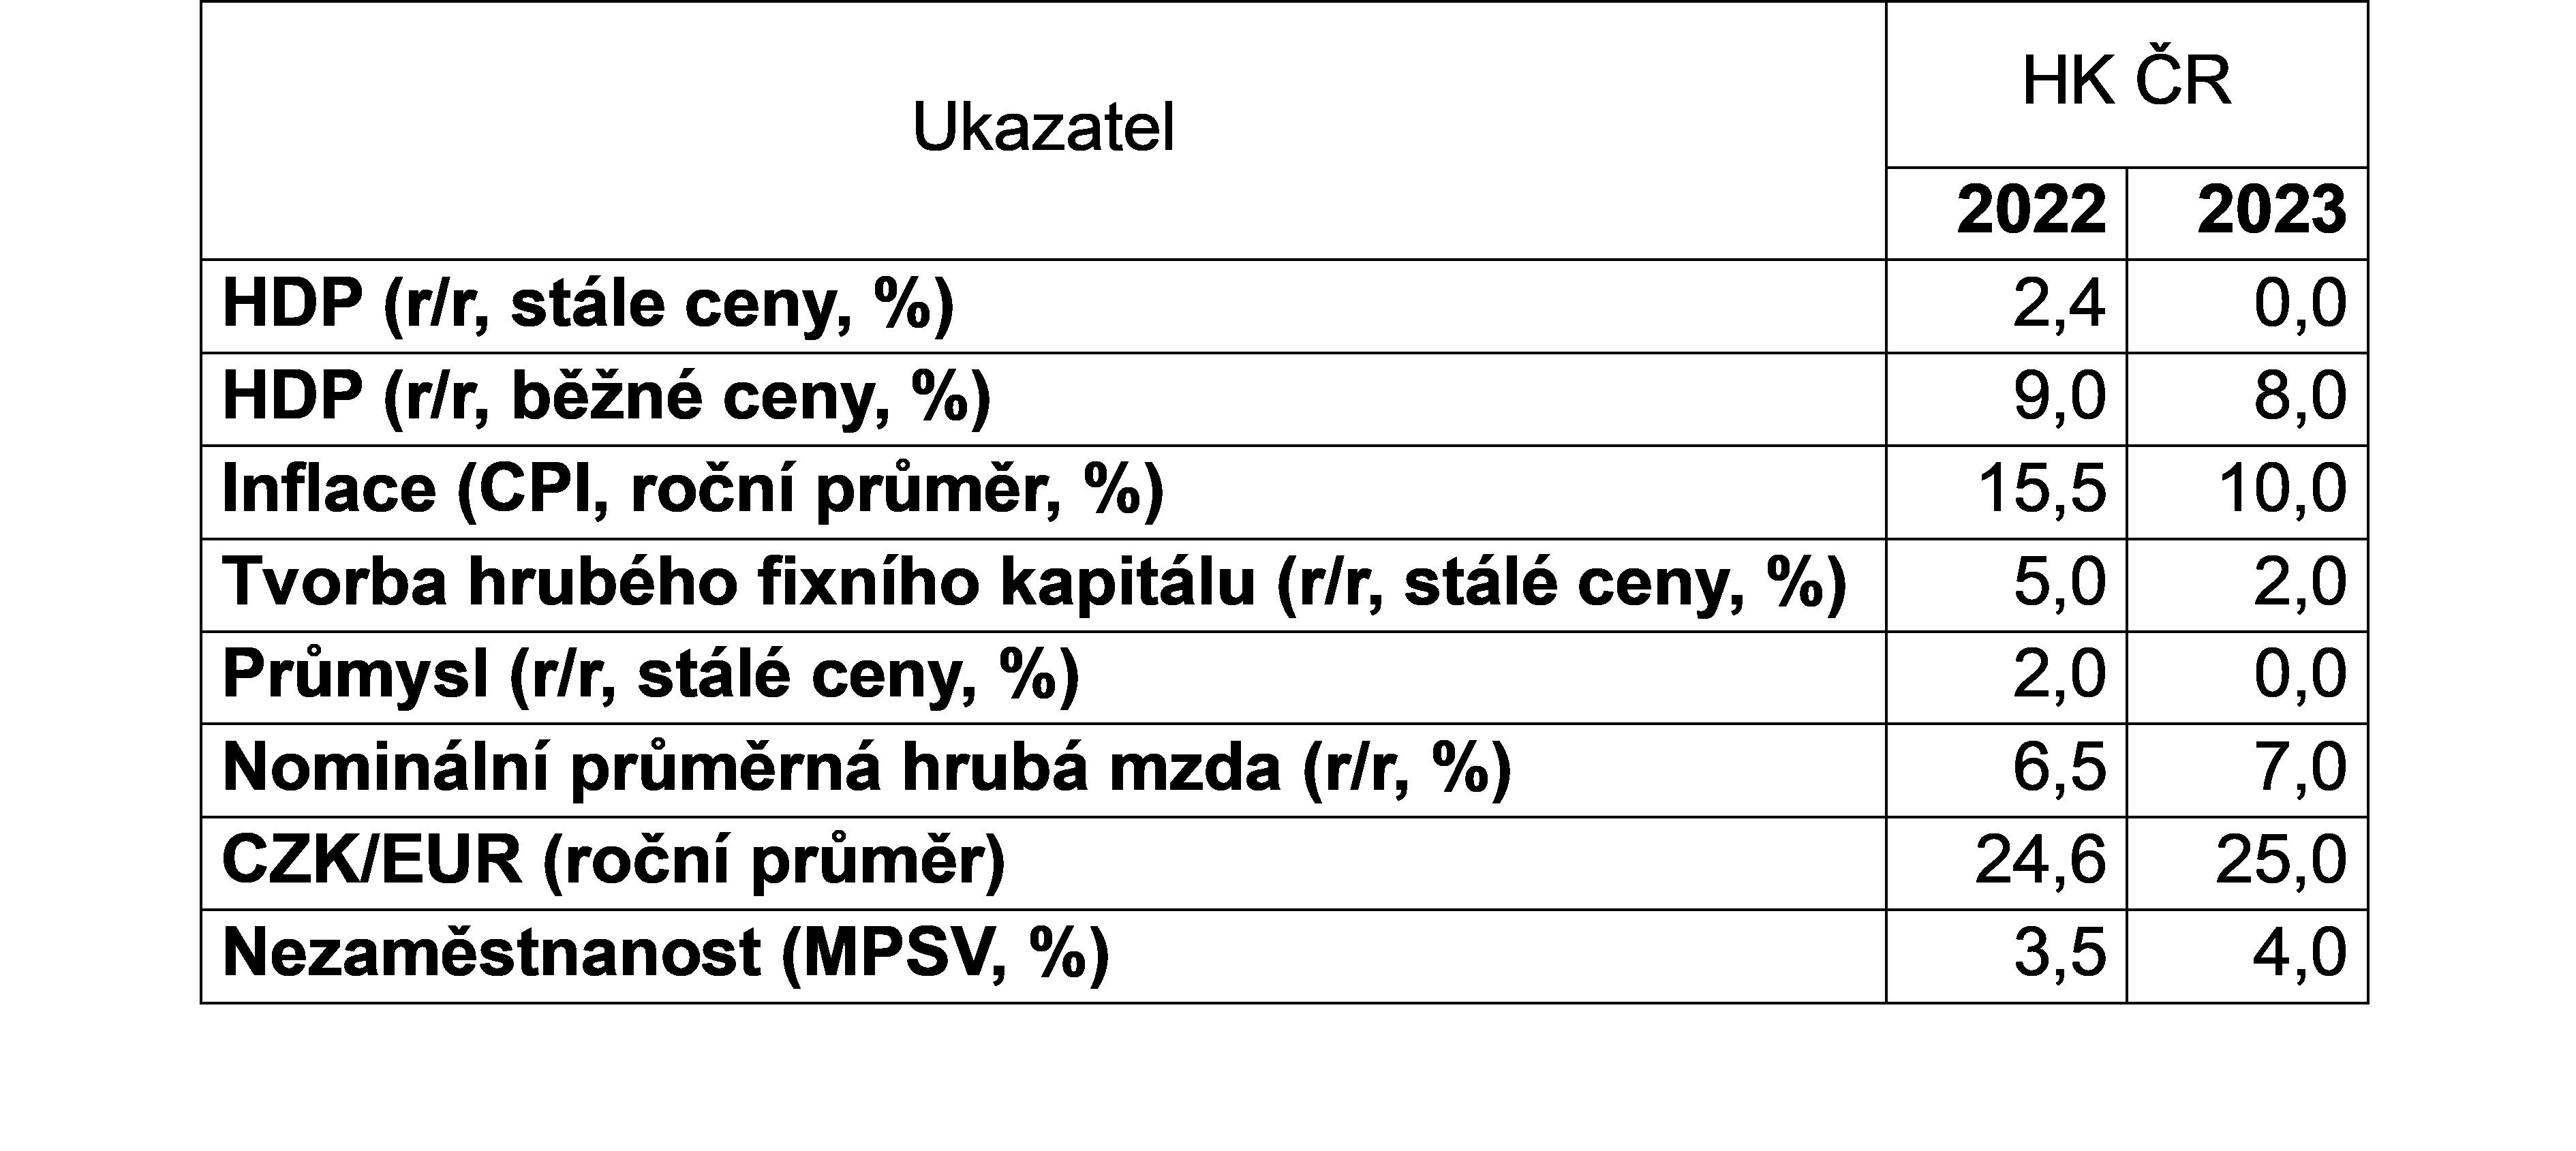 Data: HK ČR